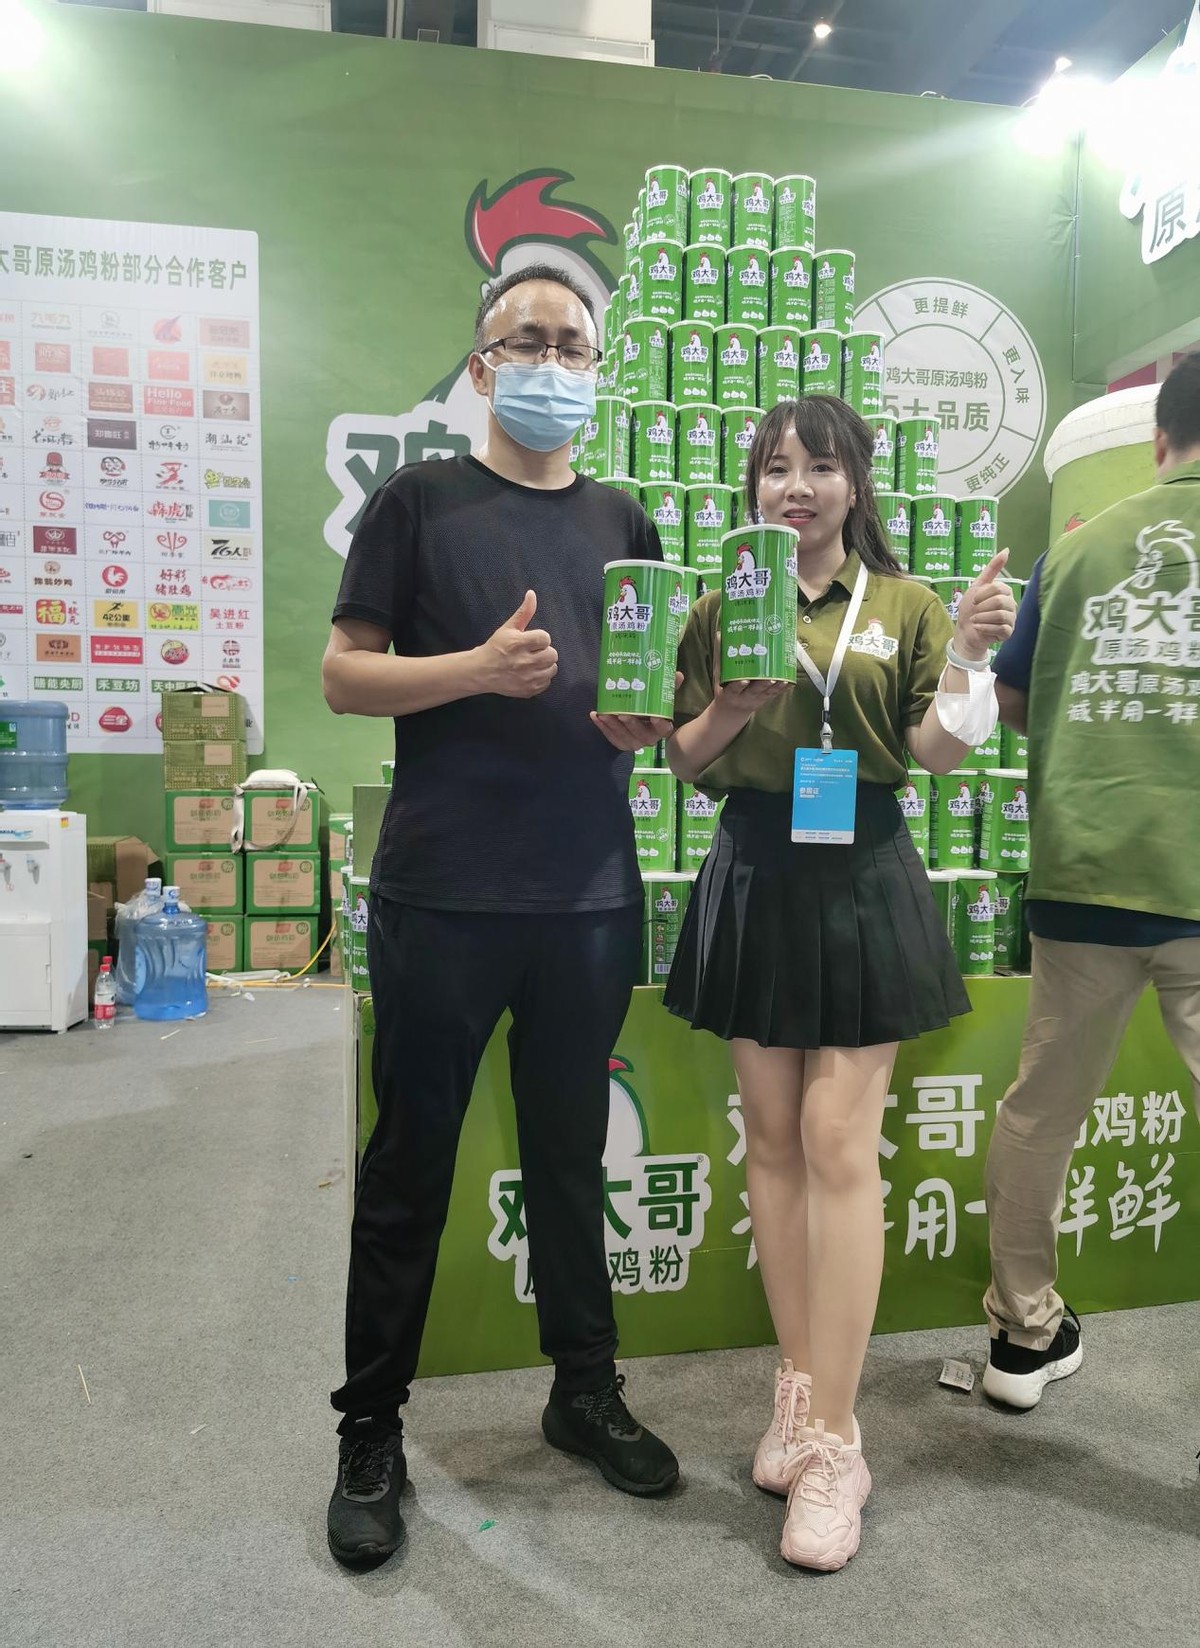 第六届中国(郑州)火锅食材用品展成功举办 鸡大哥球吧网手机直播鸡粉再耀全场